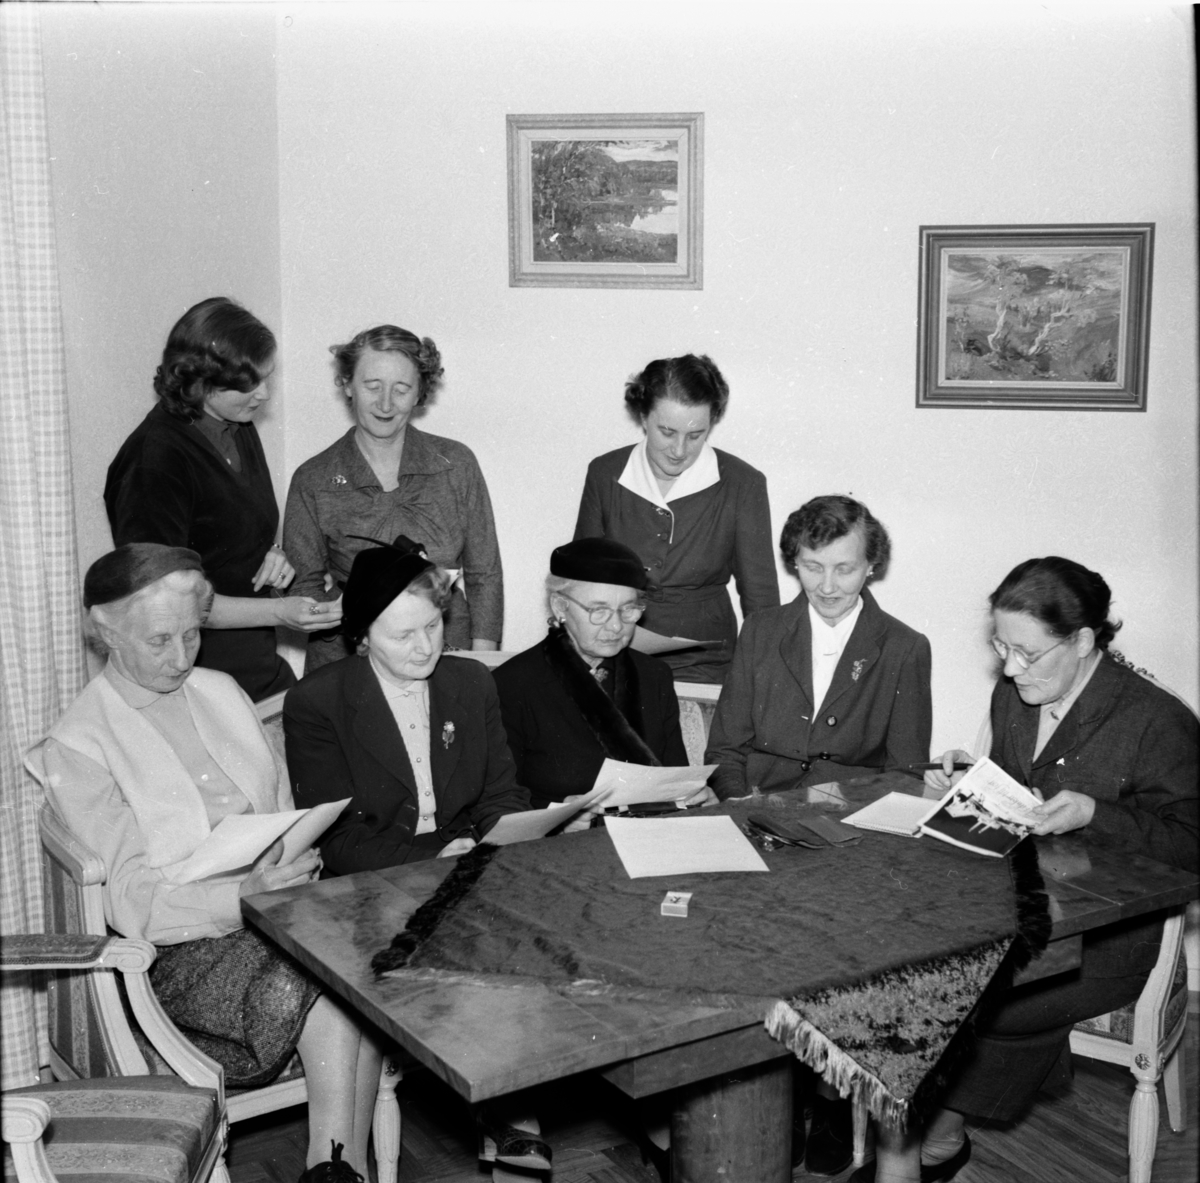 Damer kring ett bord.
Till vänster Fru (Oscar) Björkman, sittande längst till höger Fru Lisa Jonsson Fjäle, Stående Gunnel Jonäng och längst till höger fru (boktryckare) Carlsson.